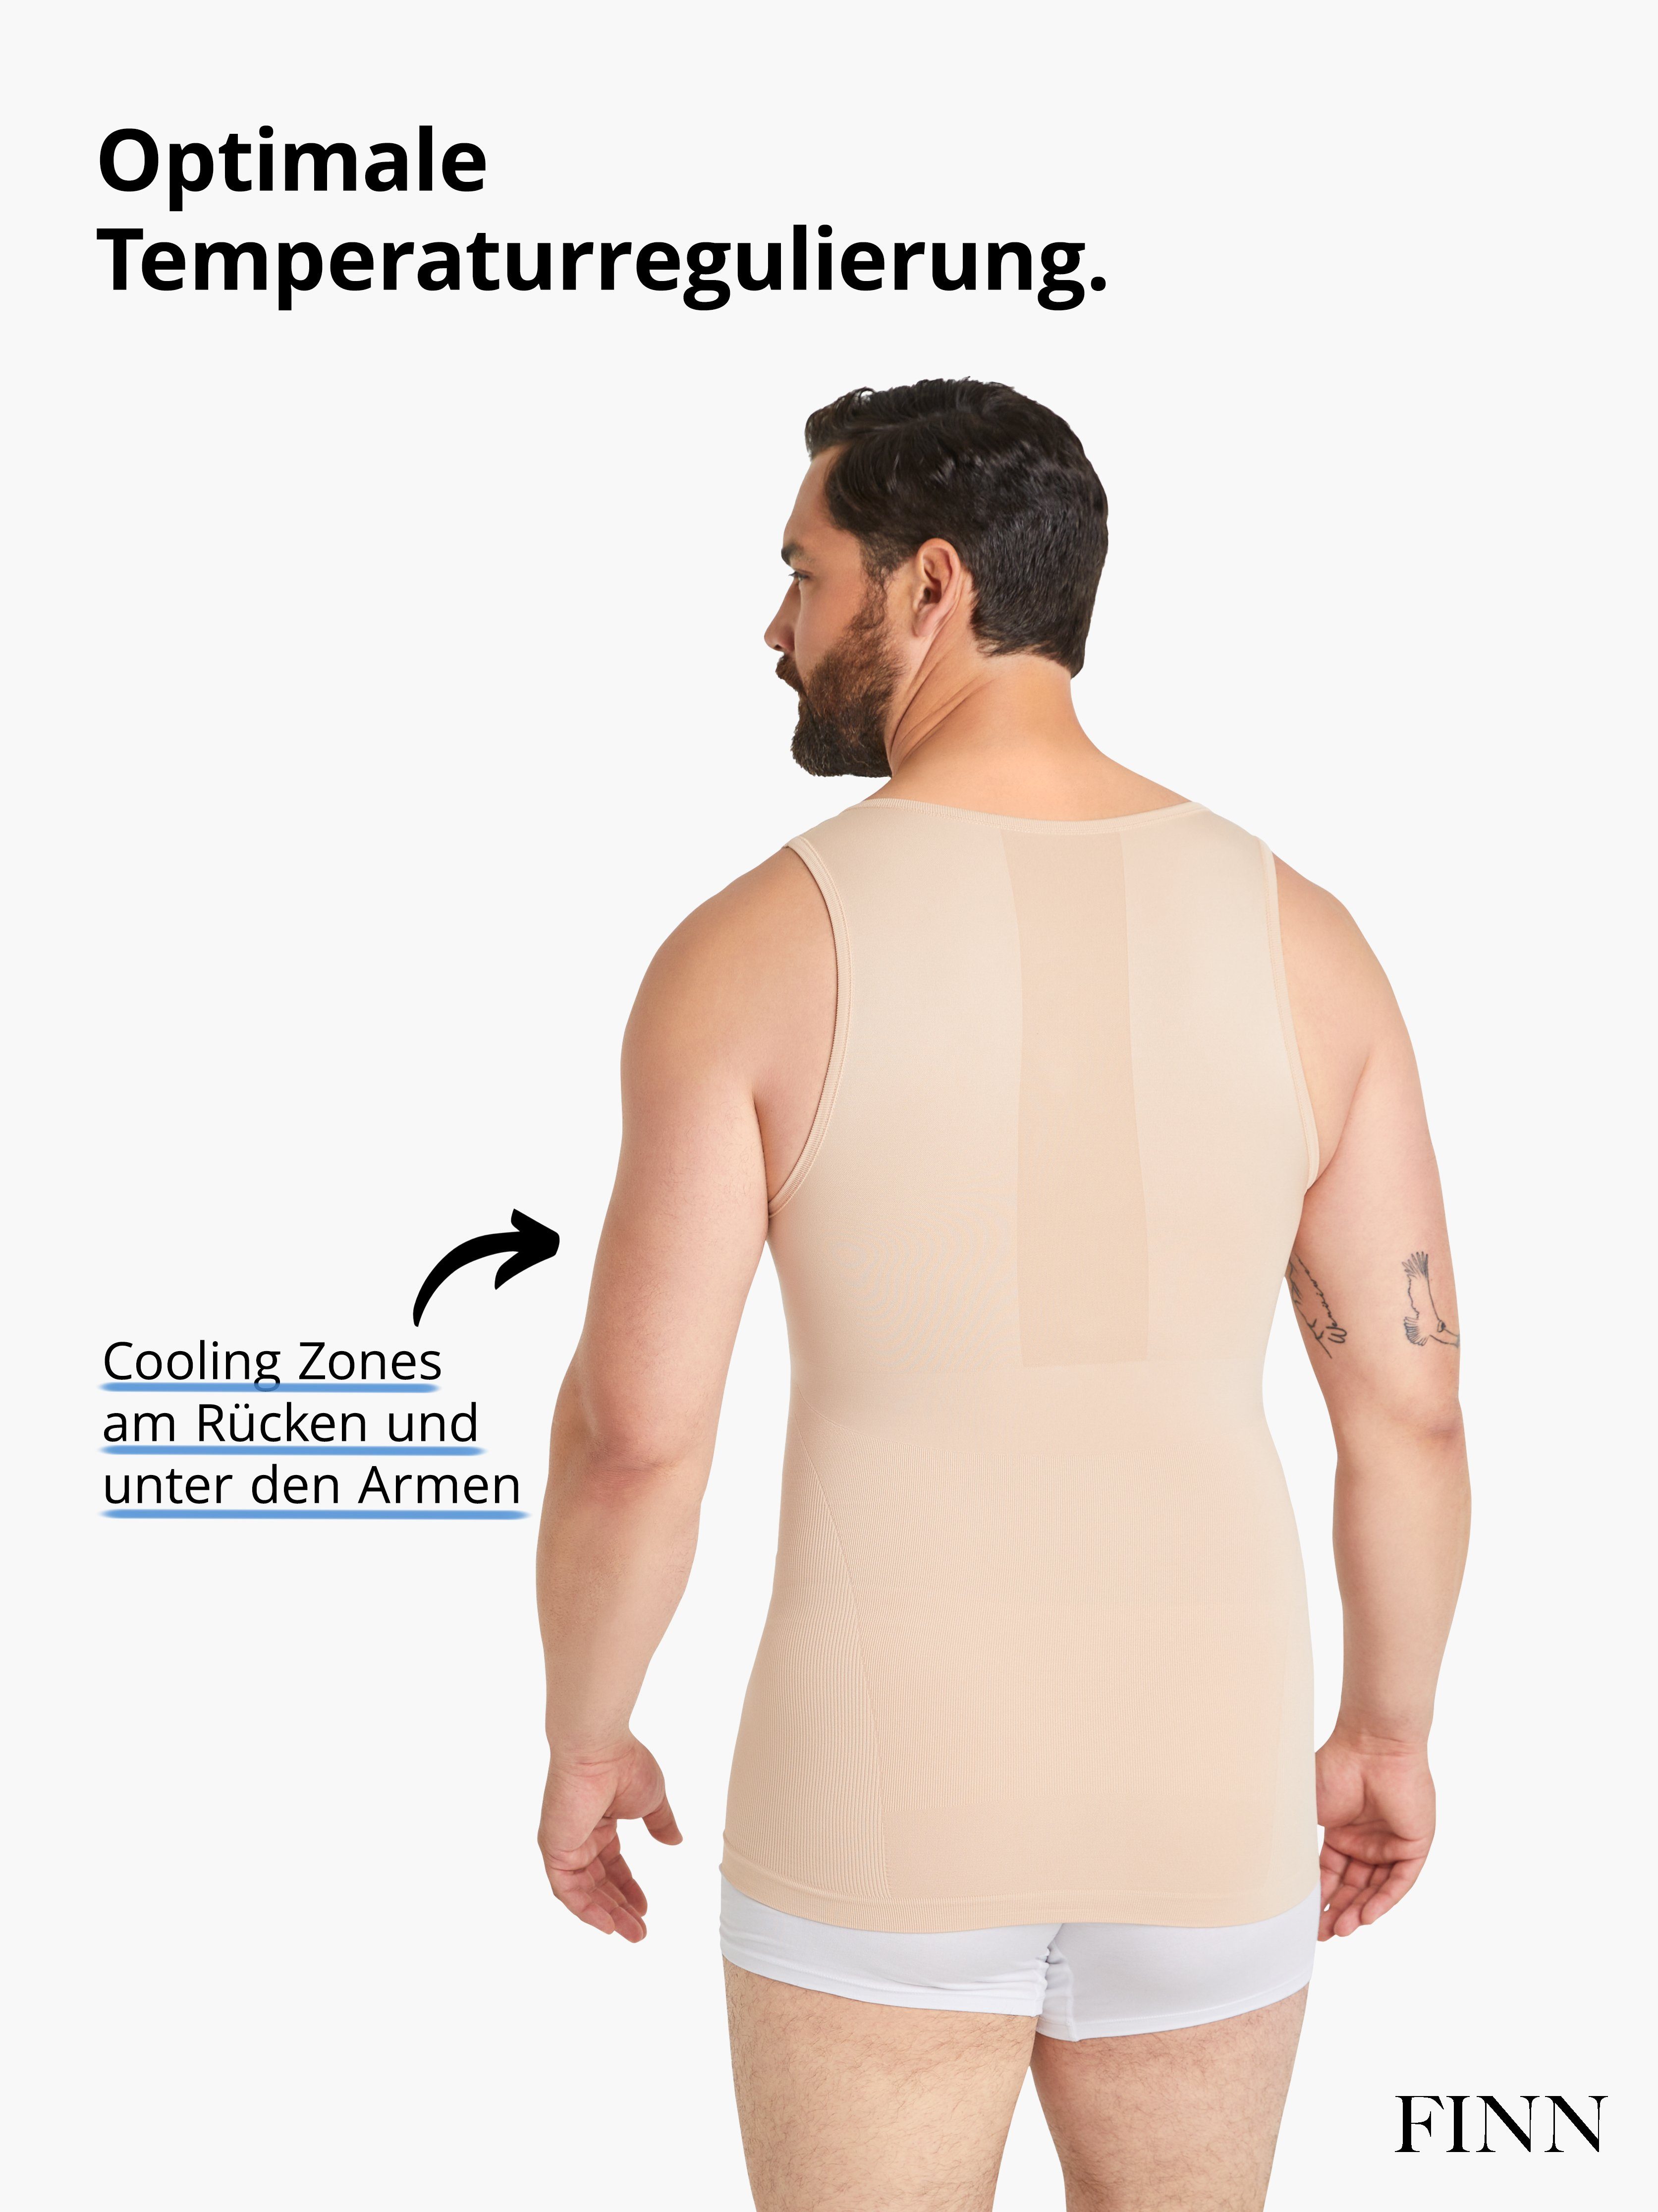 Body-Shaper Seamless Shapinghemd für Nähte Starker FINN Herren Männer Kompressions-Unterhemd Design ohne Light-Beige